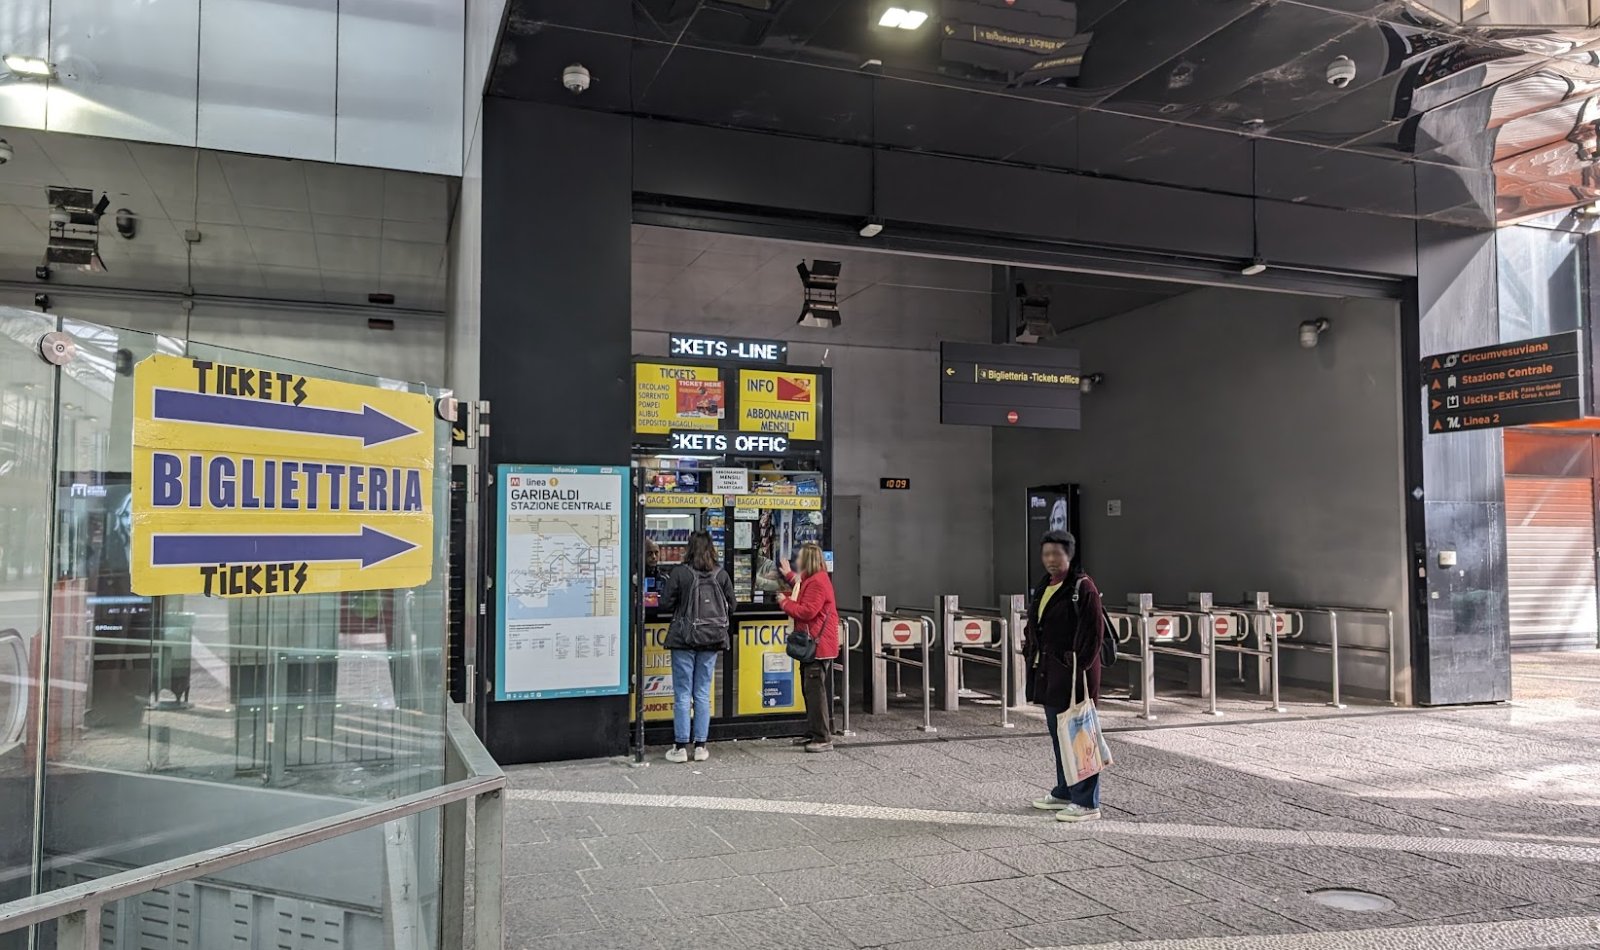 Naples Metro Line 1 Ticket Office